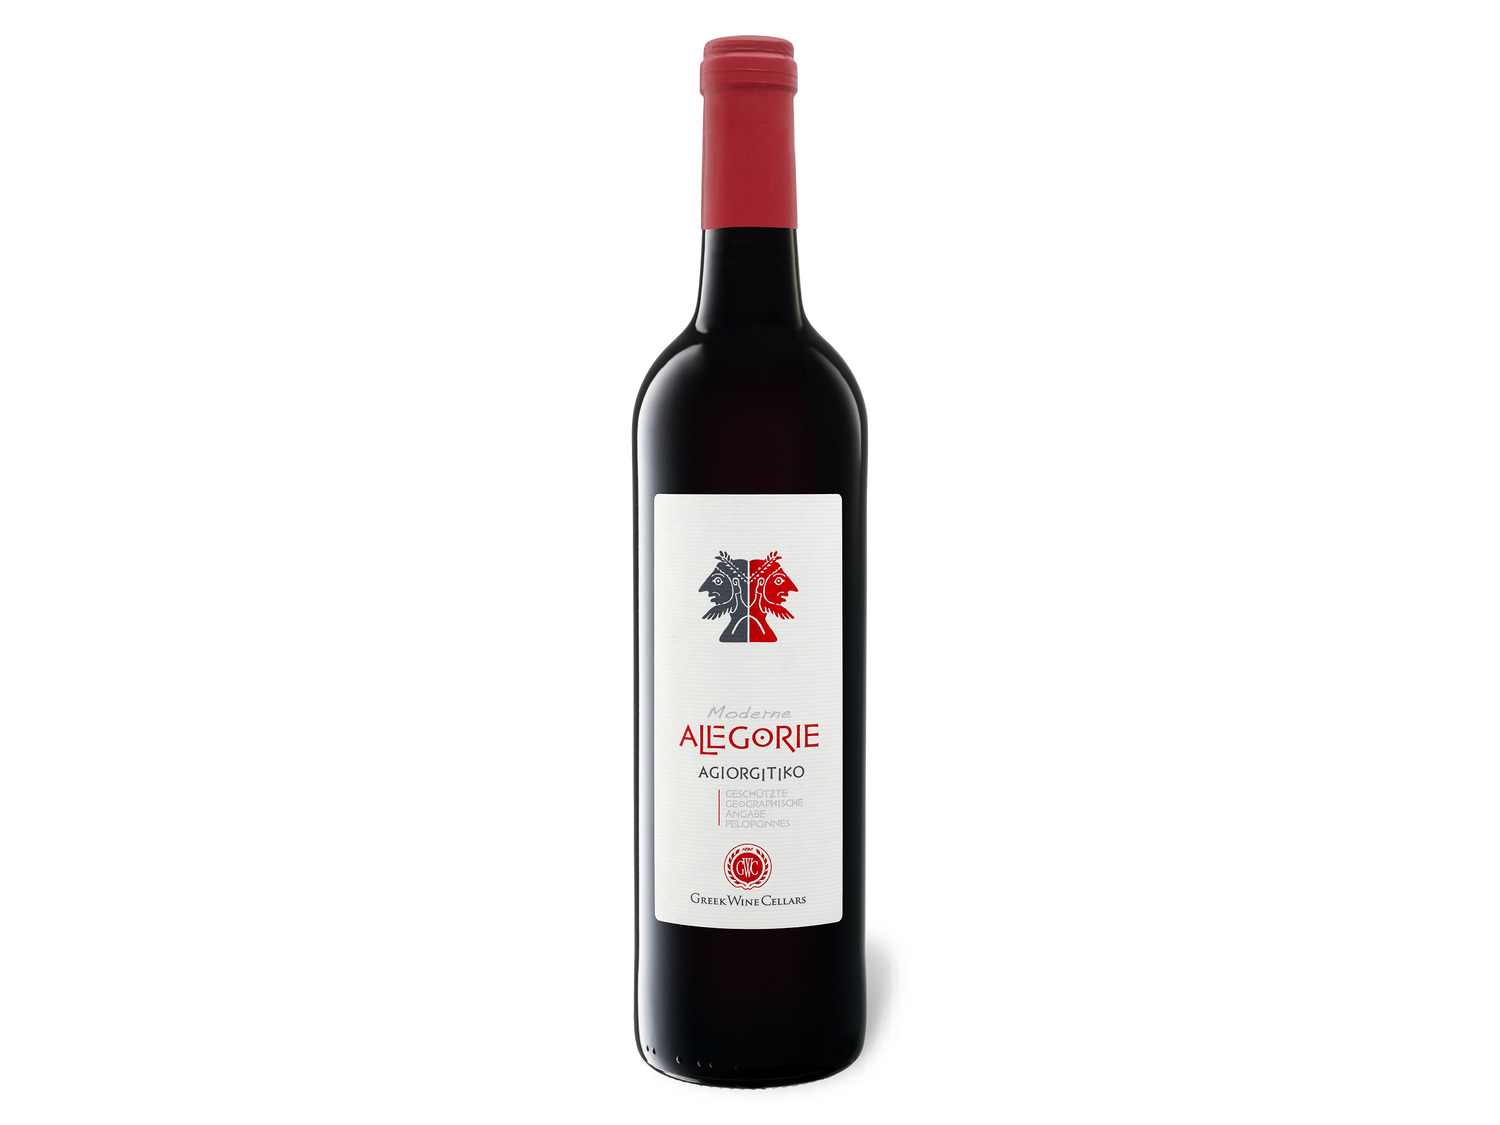 PGI Cellars Wine Agiorgitiko Alegorie Moderne Greek tr…